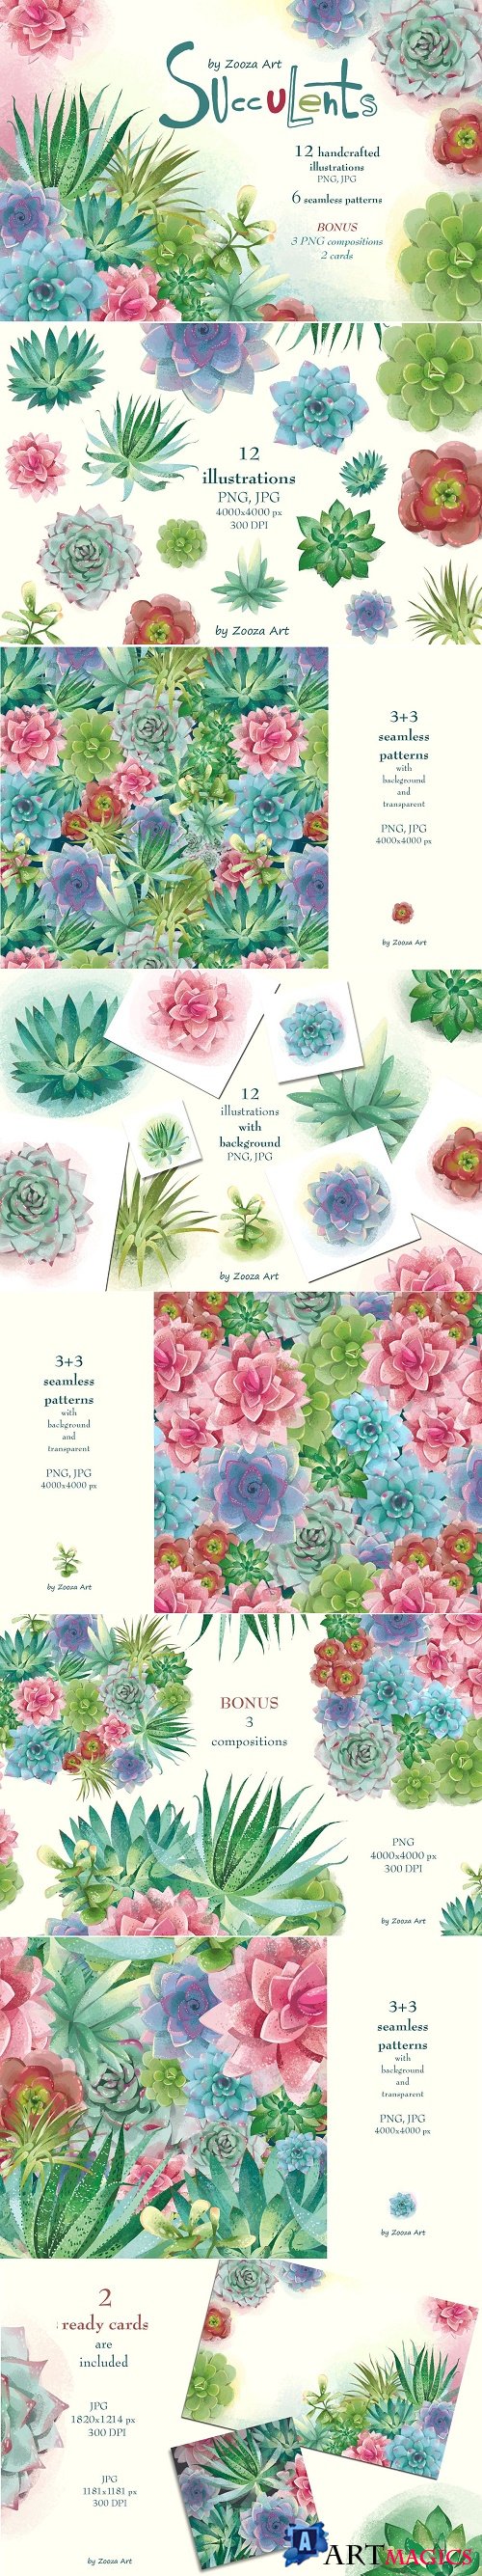 Succulents: 12 images, 6 patterns - 4198270